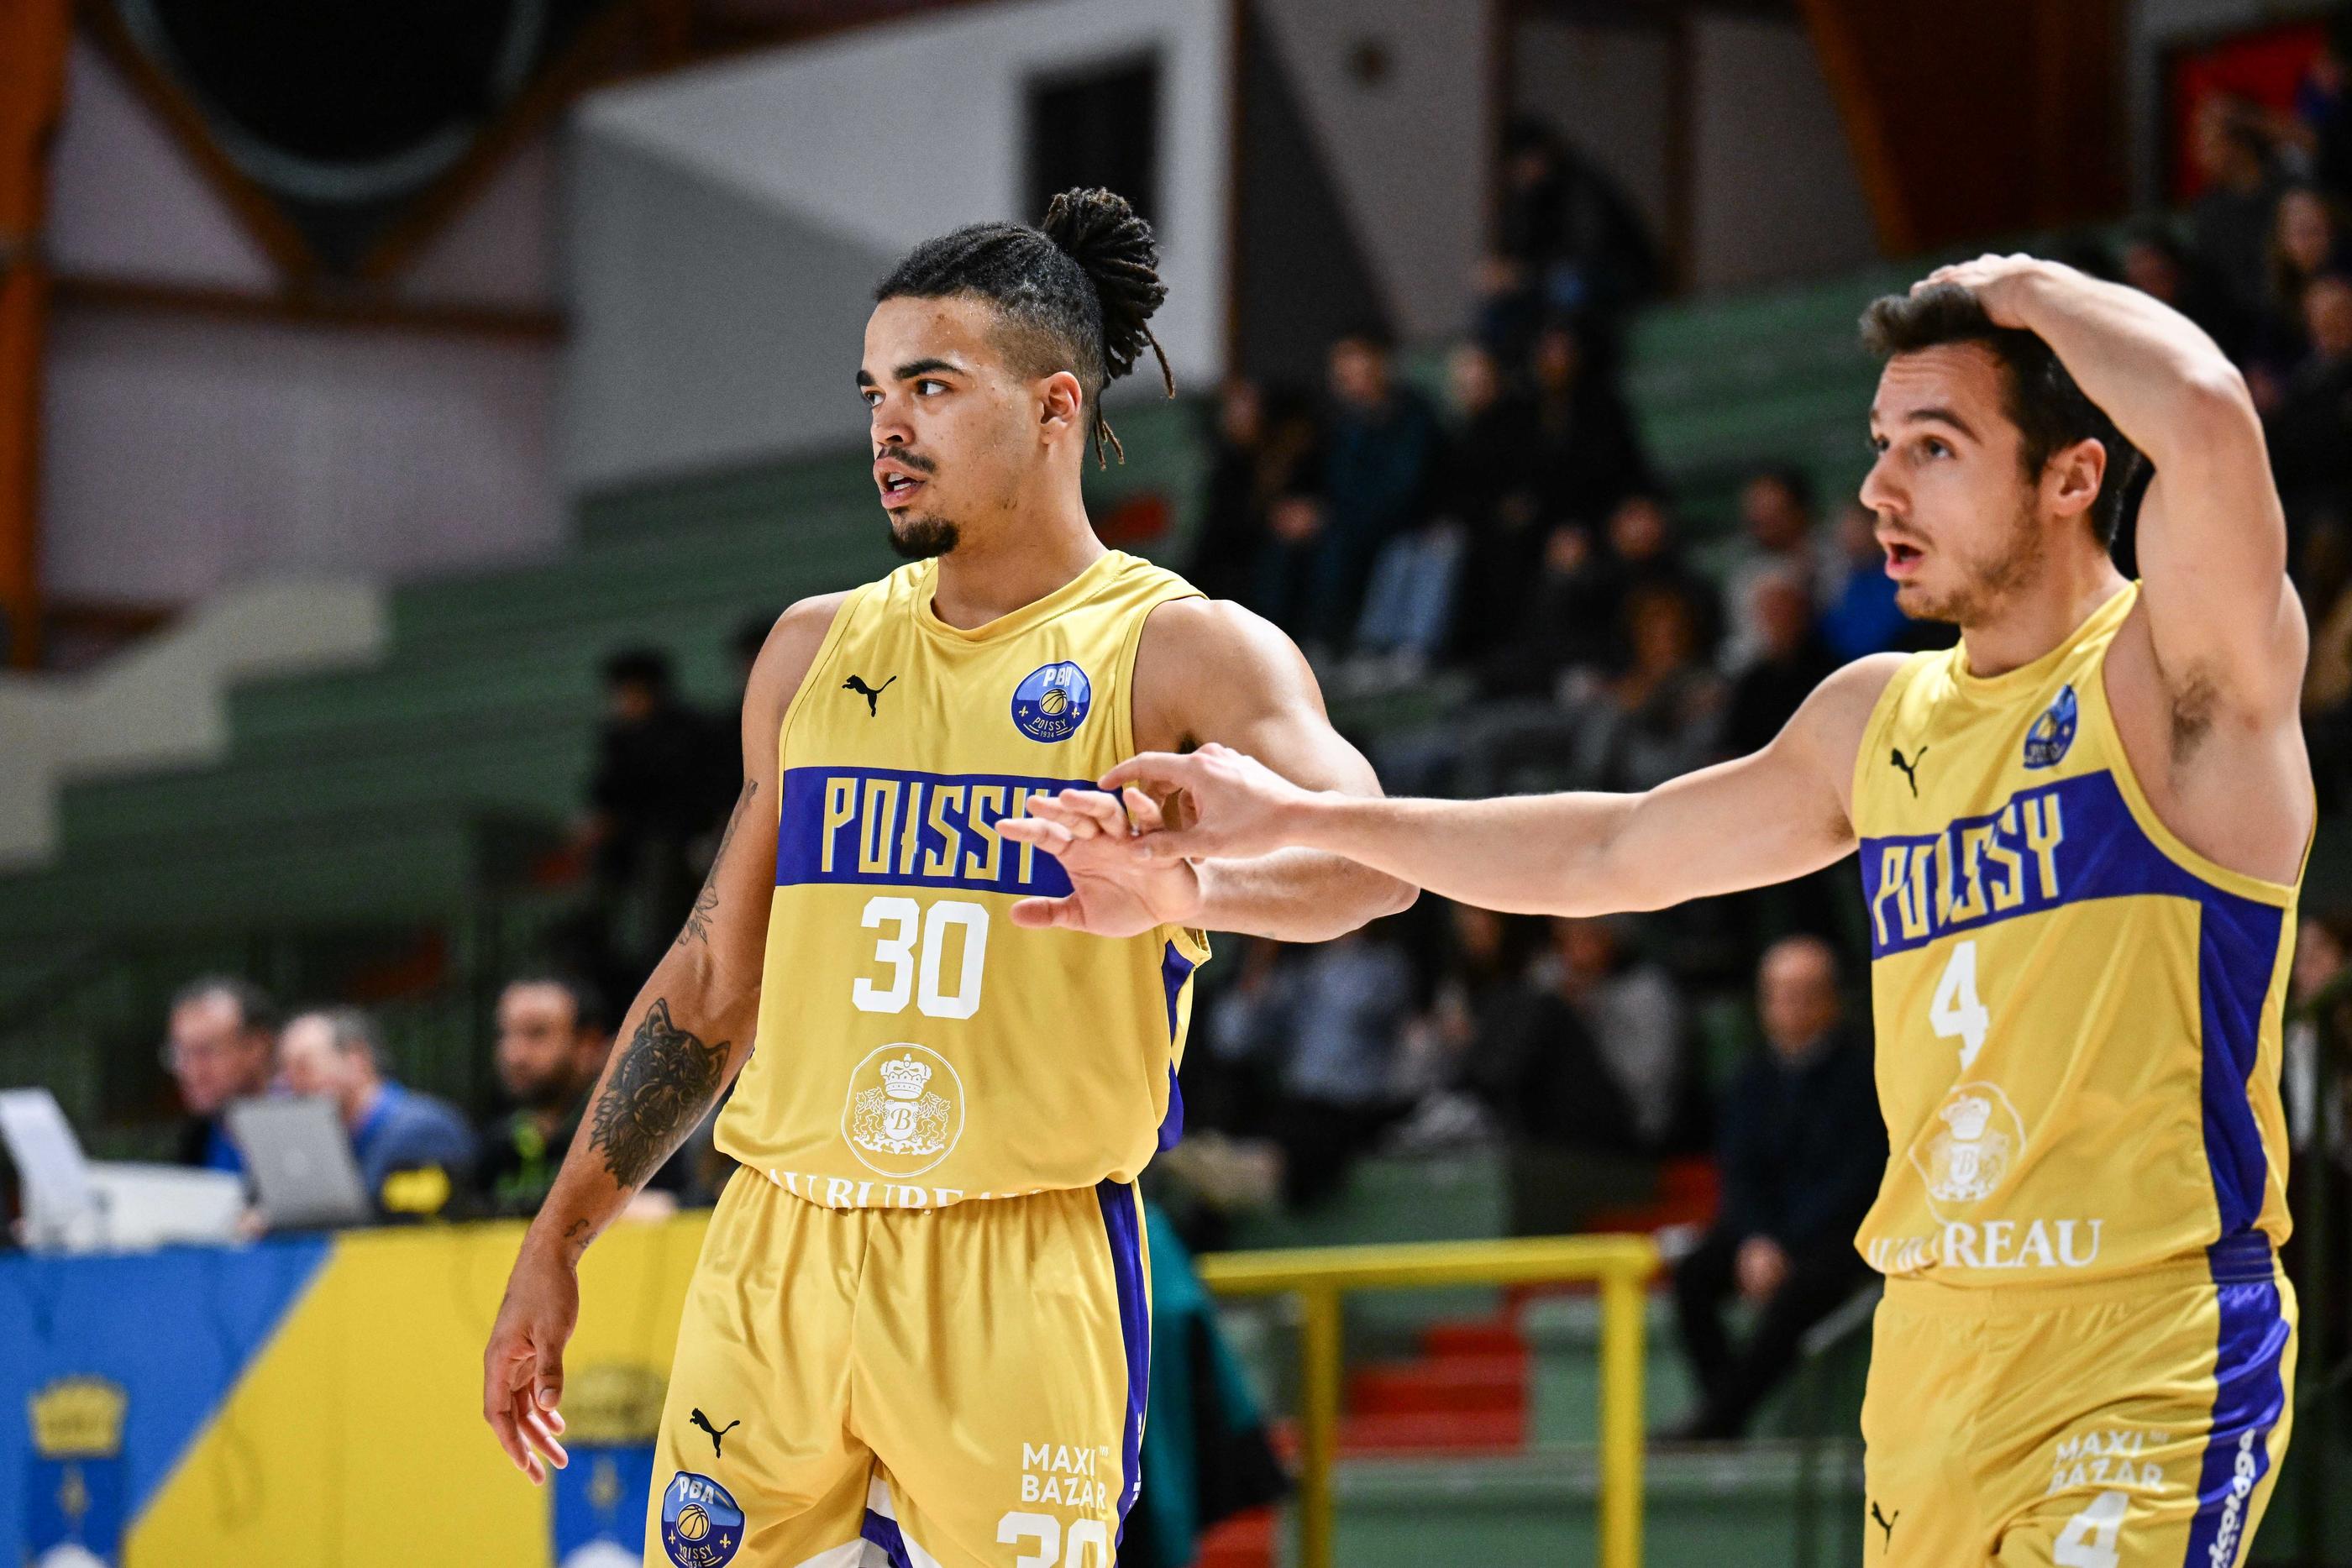 Les jaune et bleu du Poissy Basket, ici Noah Burrel et Etienne Rouyre, espèrent retrouver leur splendeur d'antan. Icon Sport/Anthony Dibon